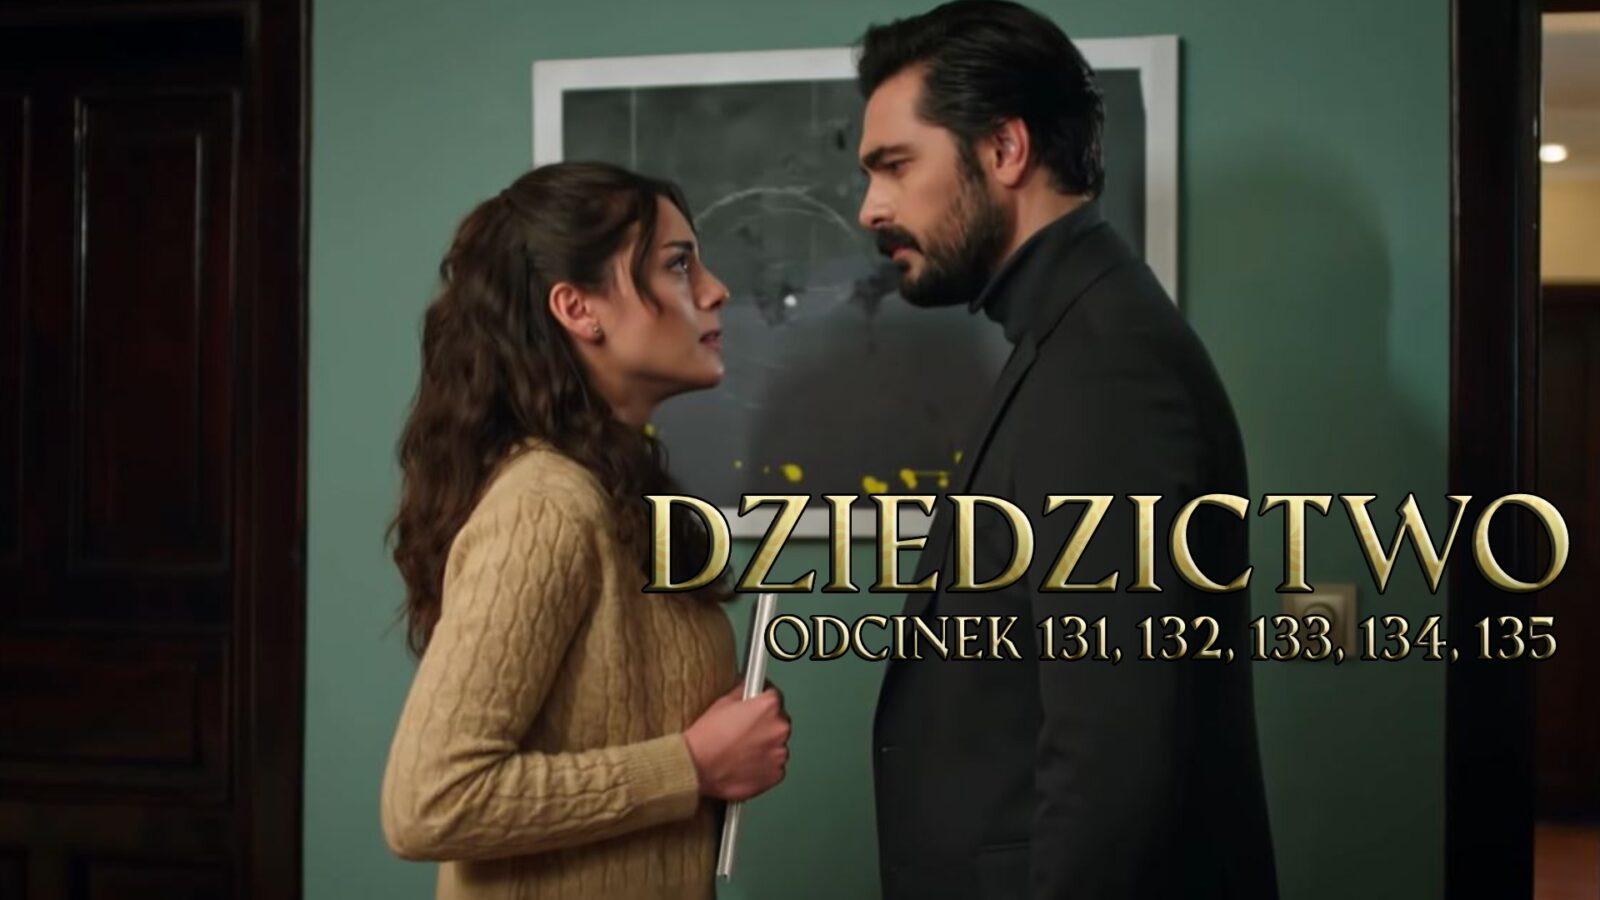 Dziedzictwo odcinki 131, 132, 133, 134, 135 online ZA DARMO – Oglądaj serial turecki DZIEDZICTWO na TVP VOD